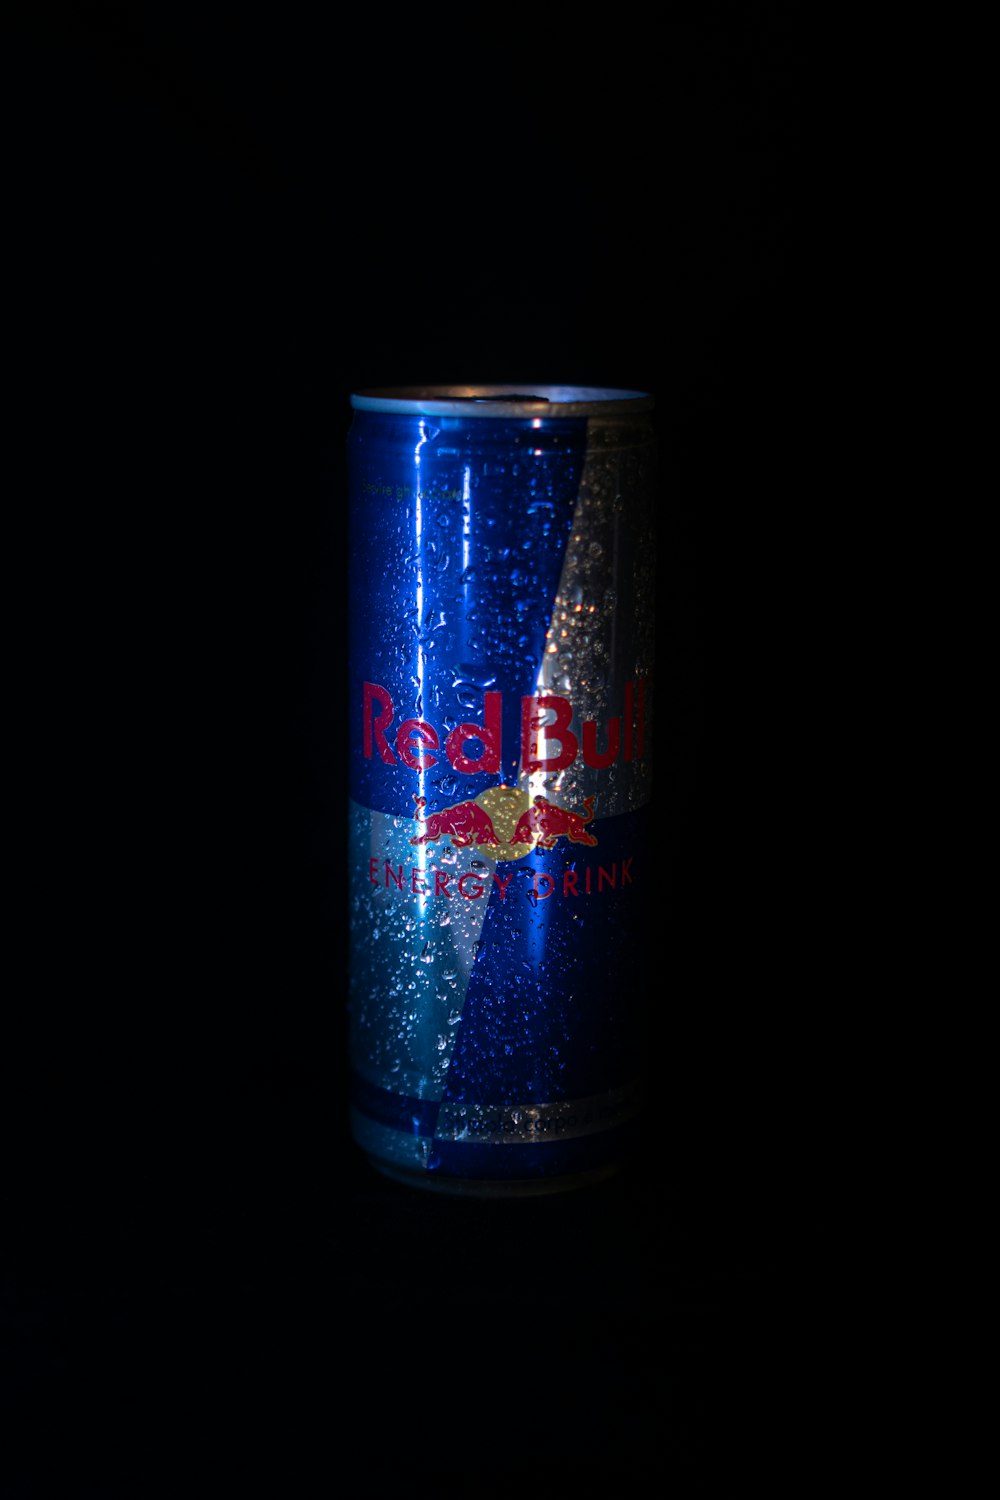 Lattina di bevanda energetica Red Bull